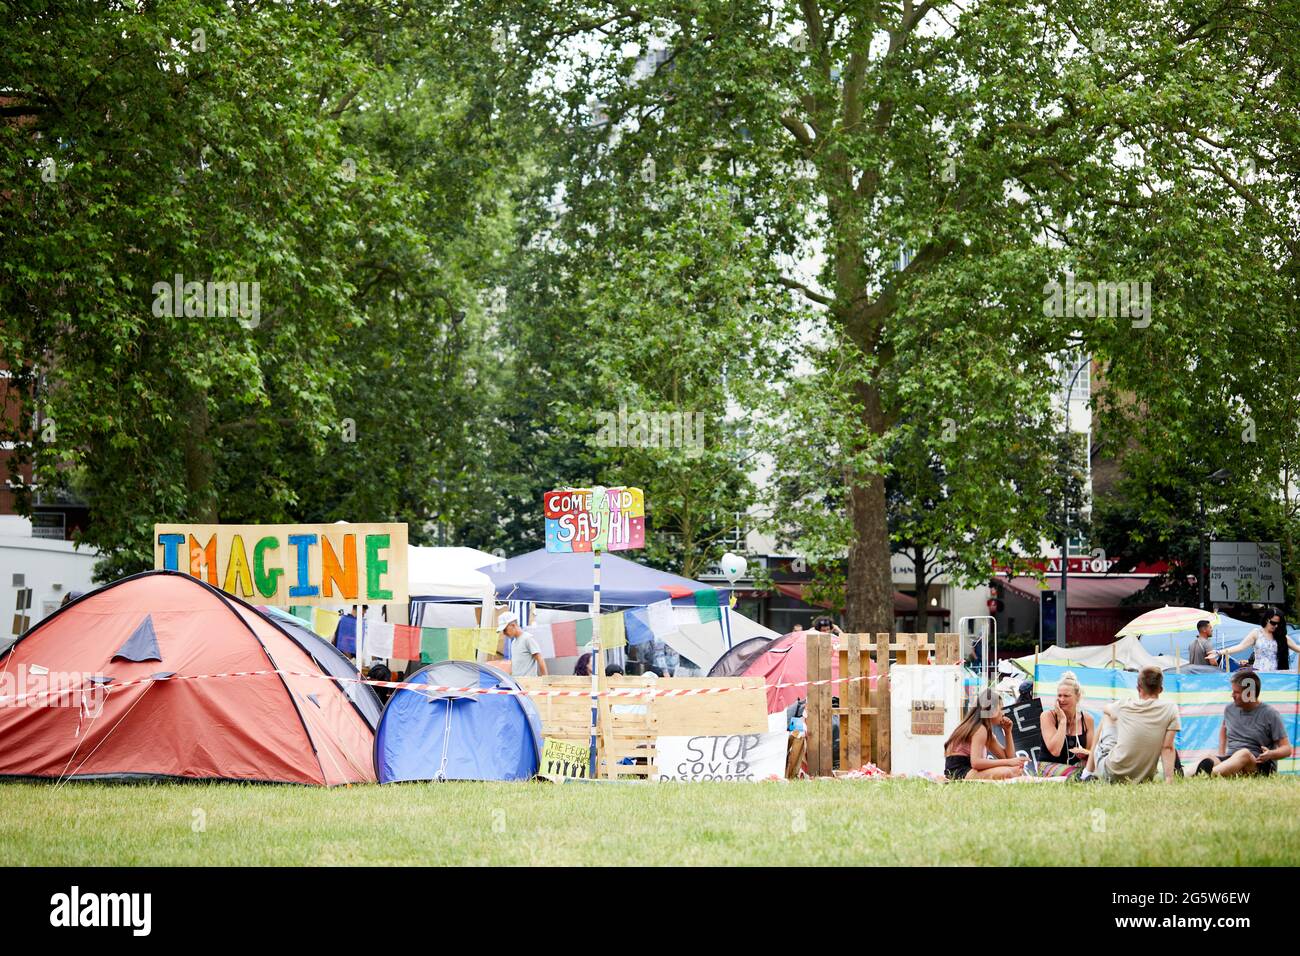 Londres, Reino Unido - 15 de junio de 2021: El adorable campo anti-encierro en Shepherds Bush Green (tomado dos días antes de que el campamento fuera removido por las alabadías). Foto de stock